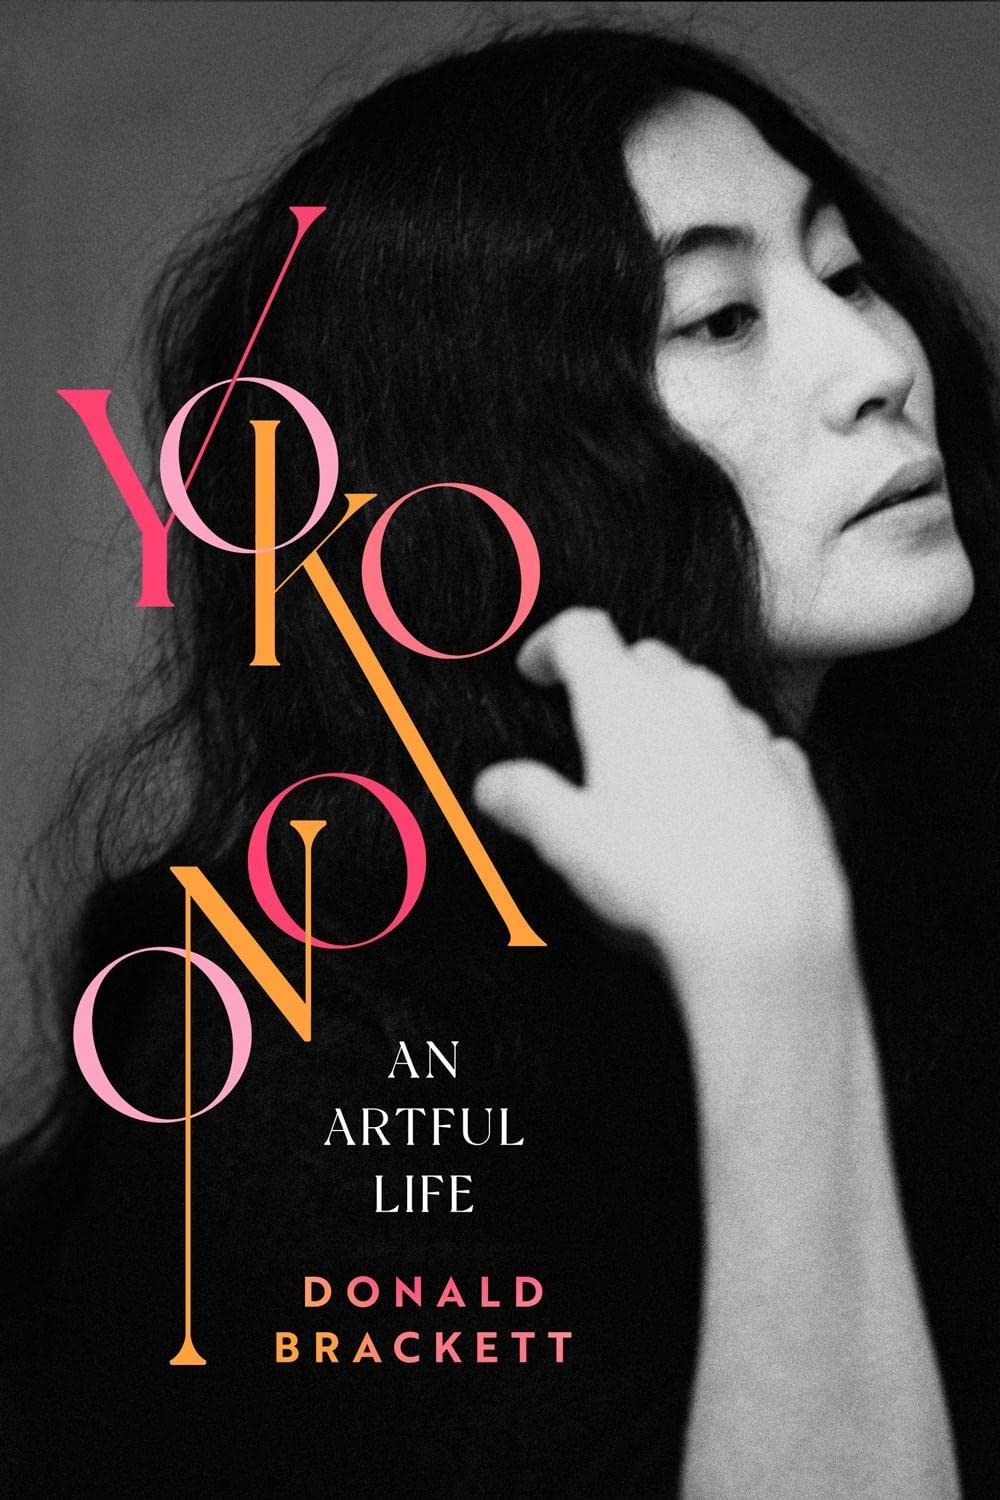 Yoko Ono: An Artful Life